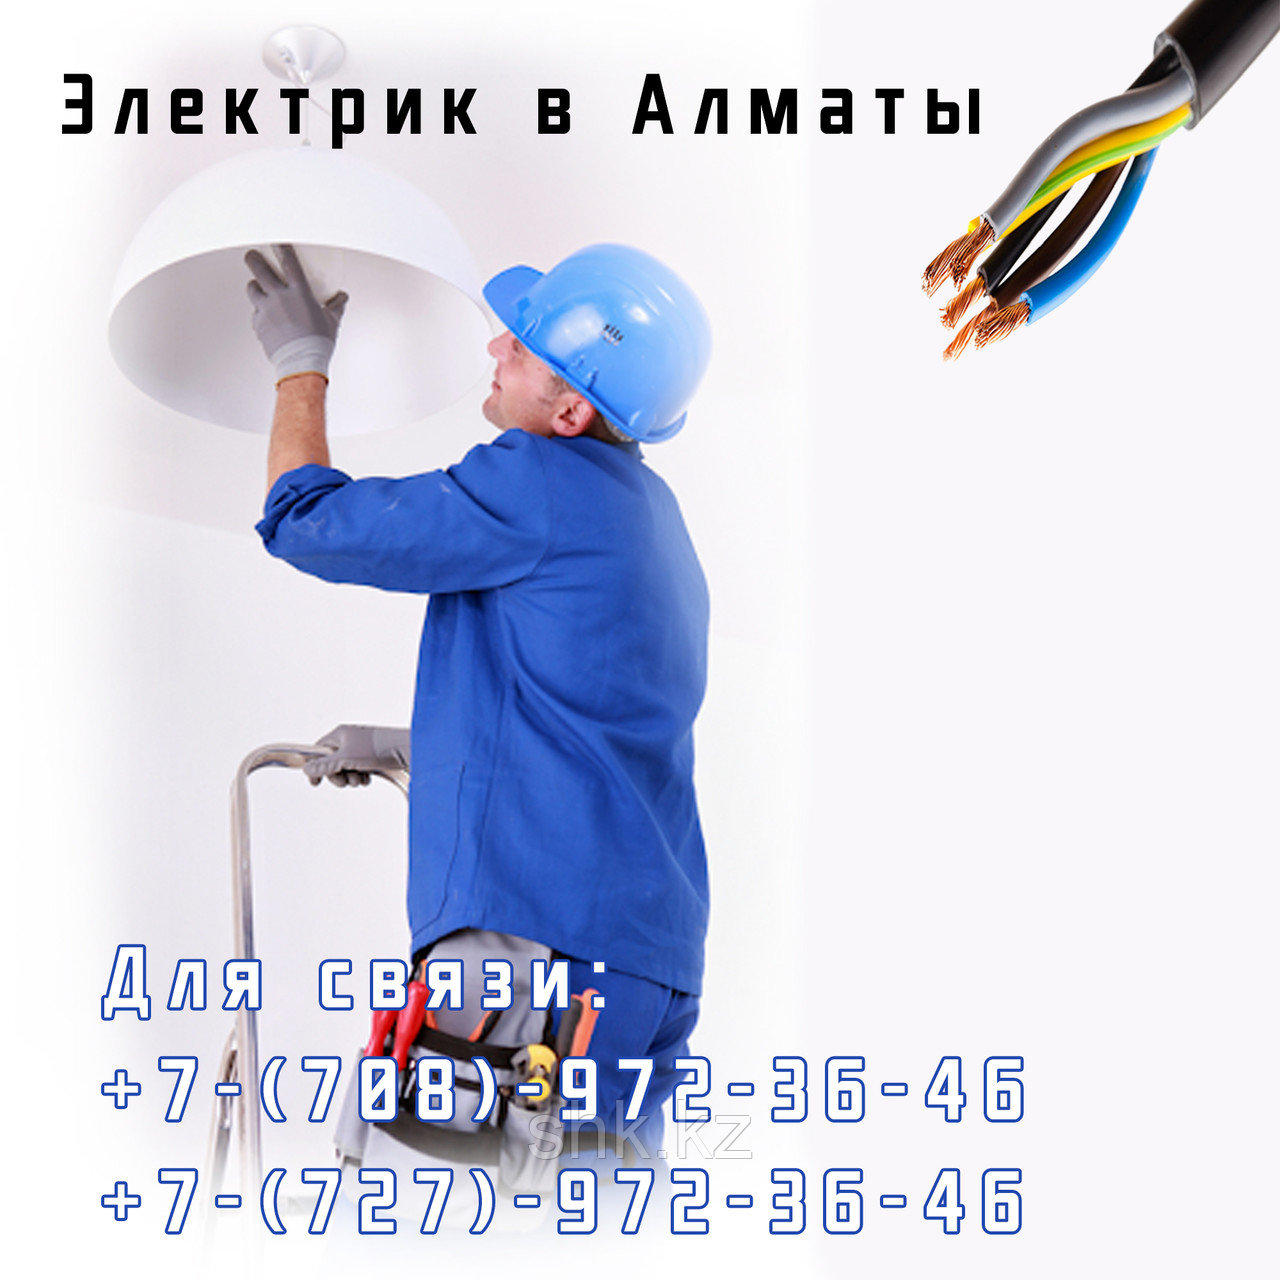 Установка, сборка и монтаж люстр в Алматы